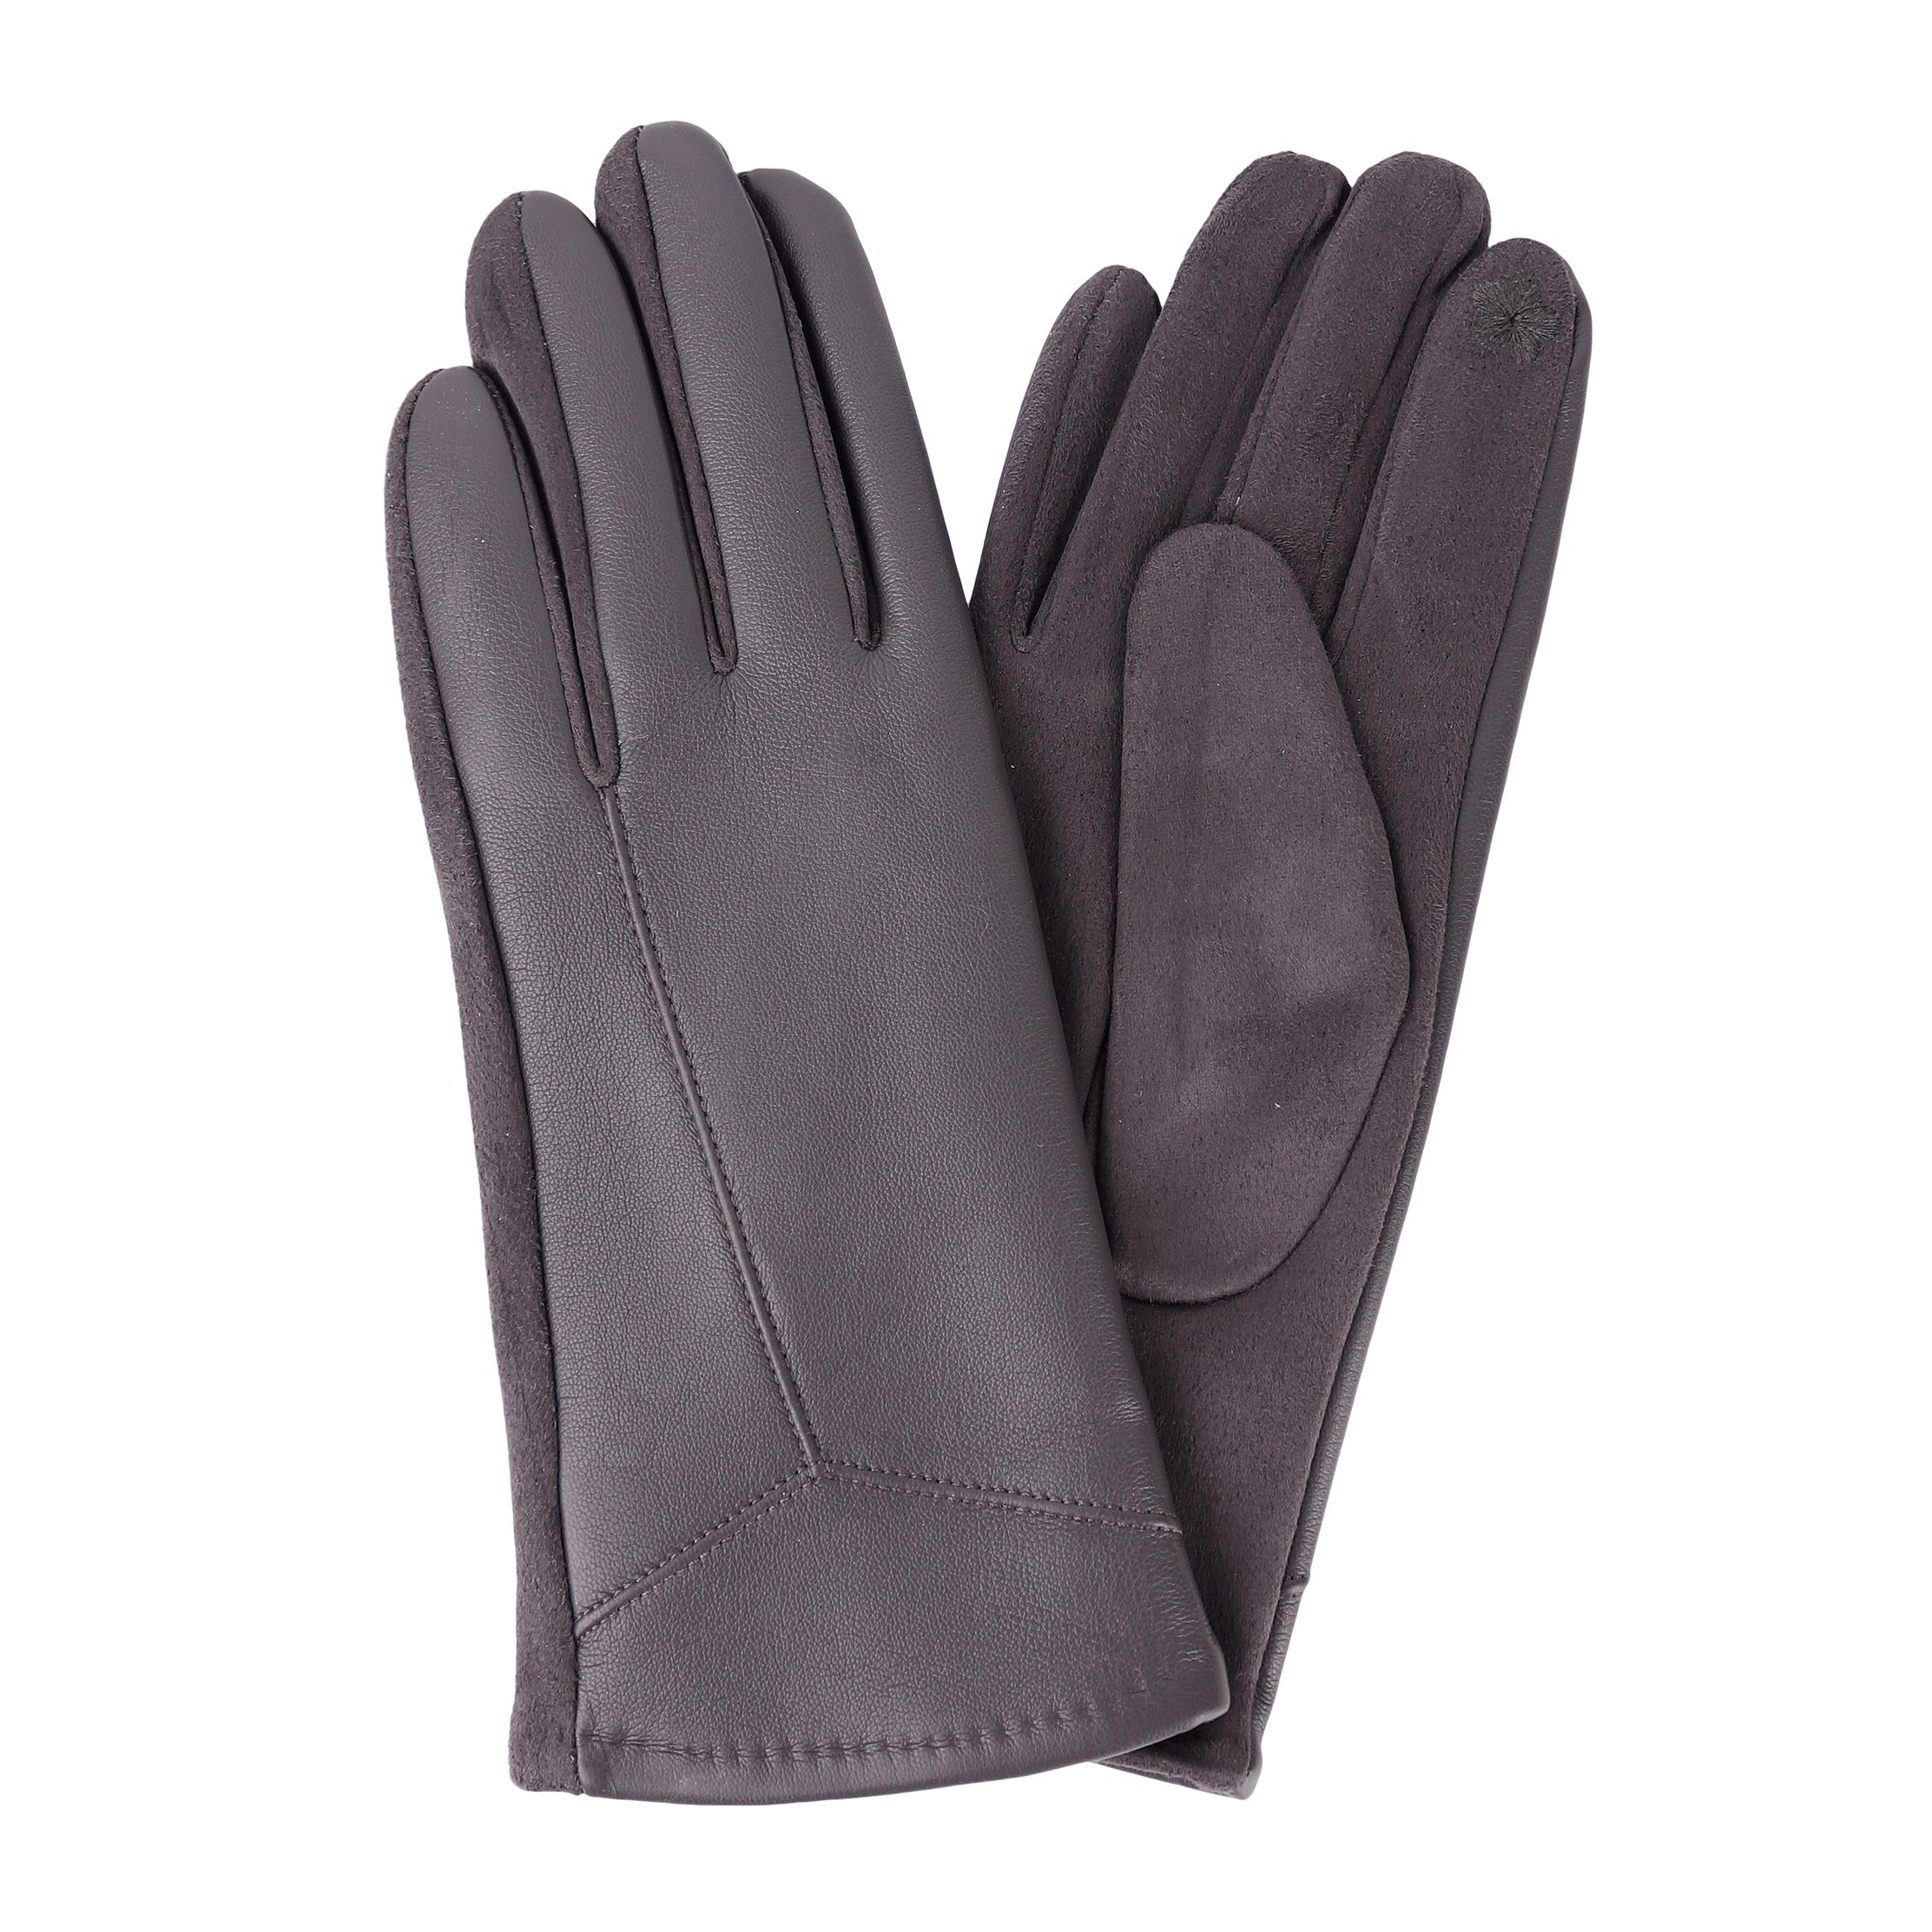 MIRROSI Lederhandschuhe Damen Touchscreen Handschuhe gefüttert Warm ONESIZE aus Veganleder sehr weich und warm ideal für Herbst oder Winter Dunkelgrau